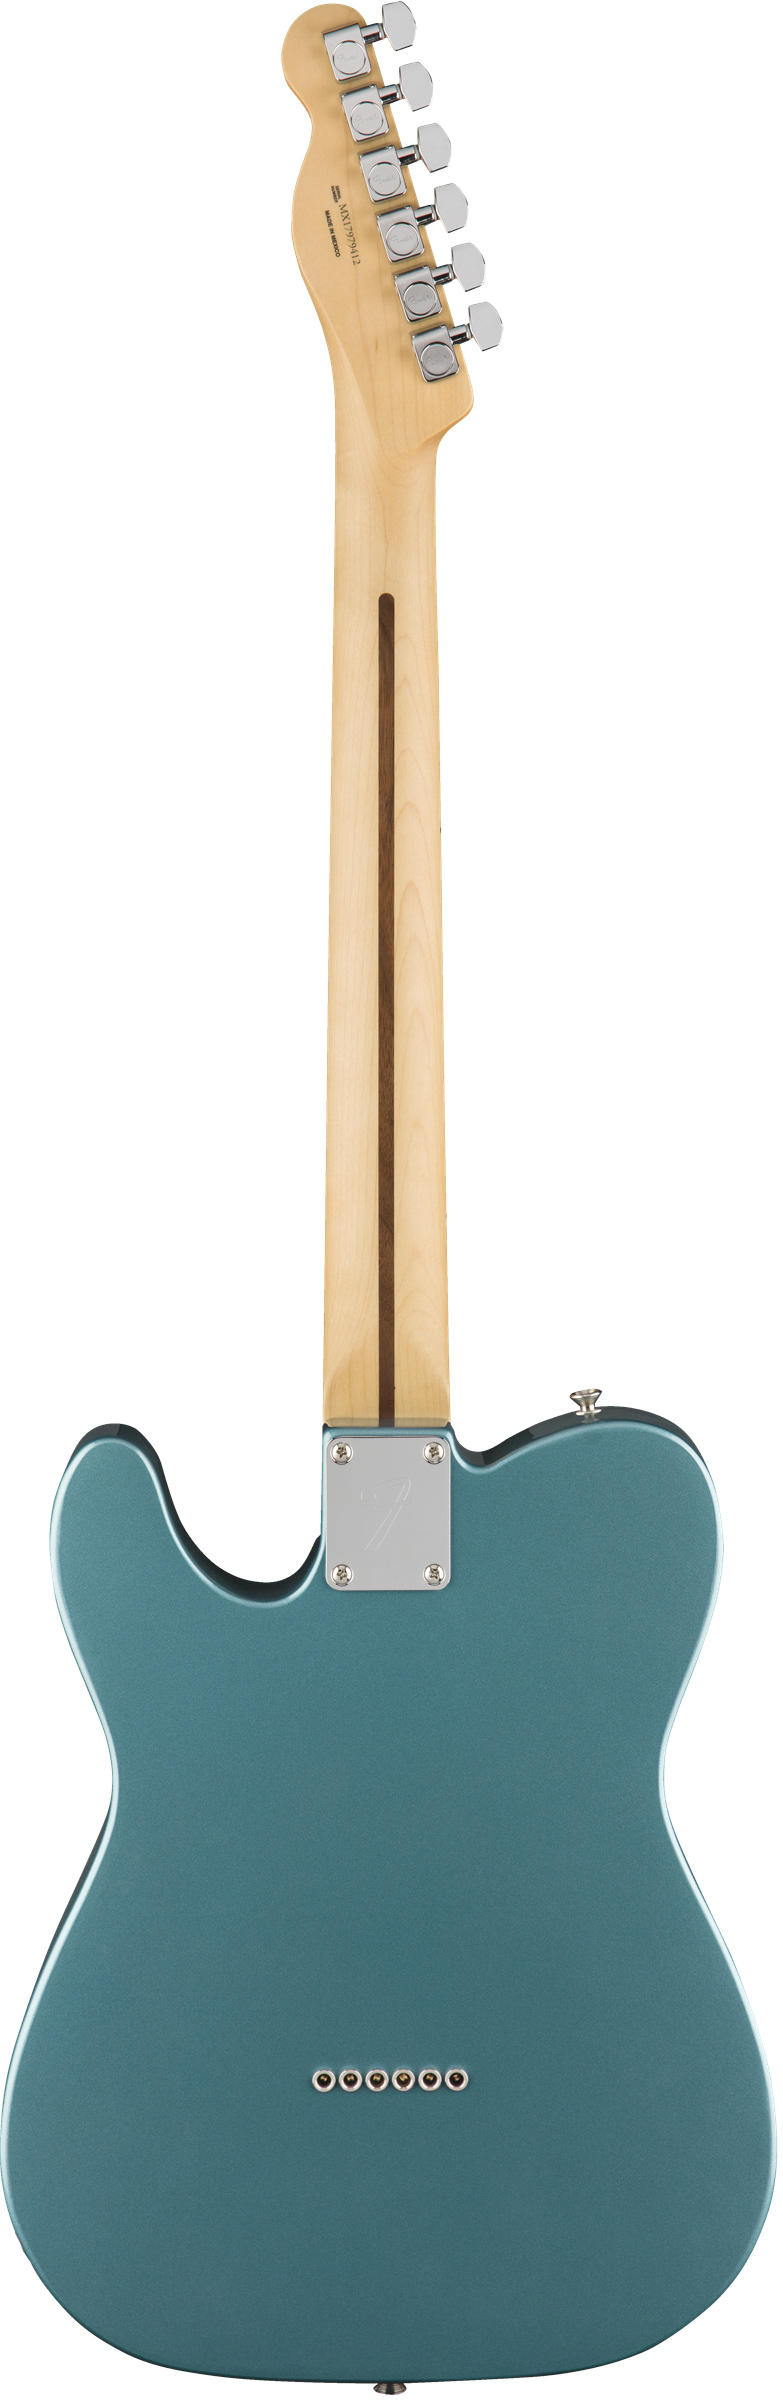 Fender Player Telecaster, Maple - Tidepool